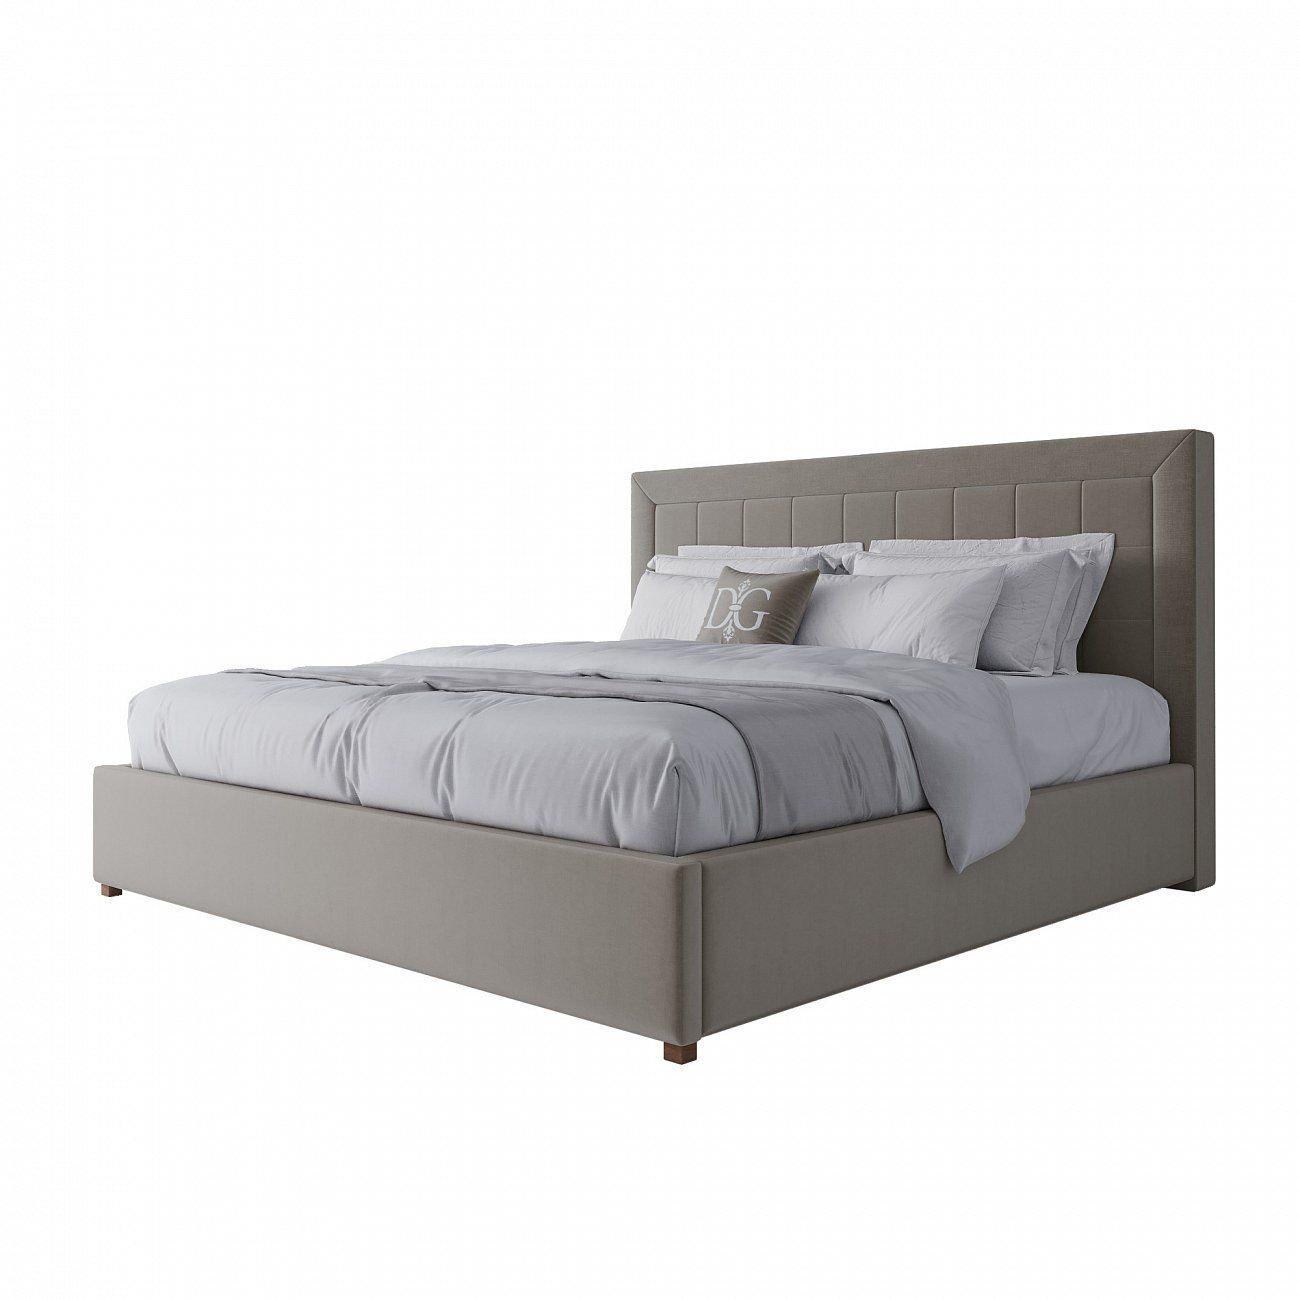 Euro bed 200x200 cm brown-gray Elizabeth